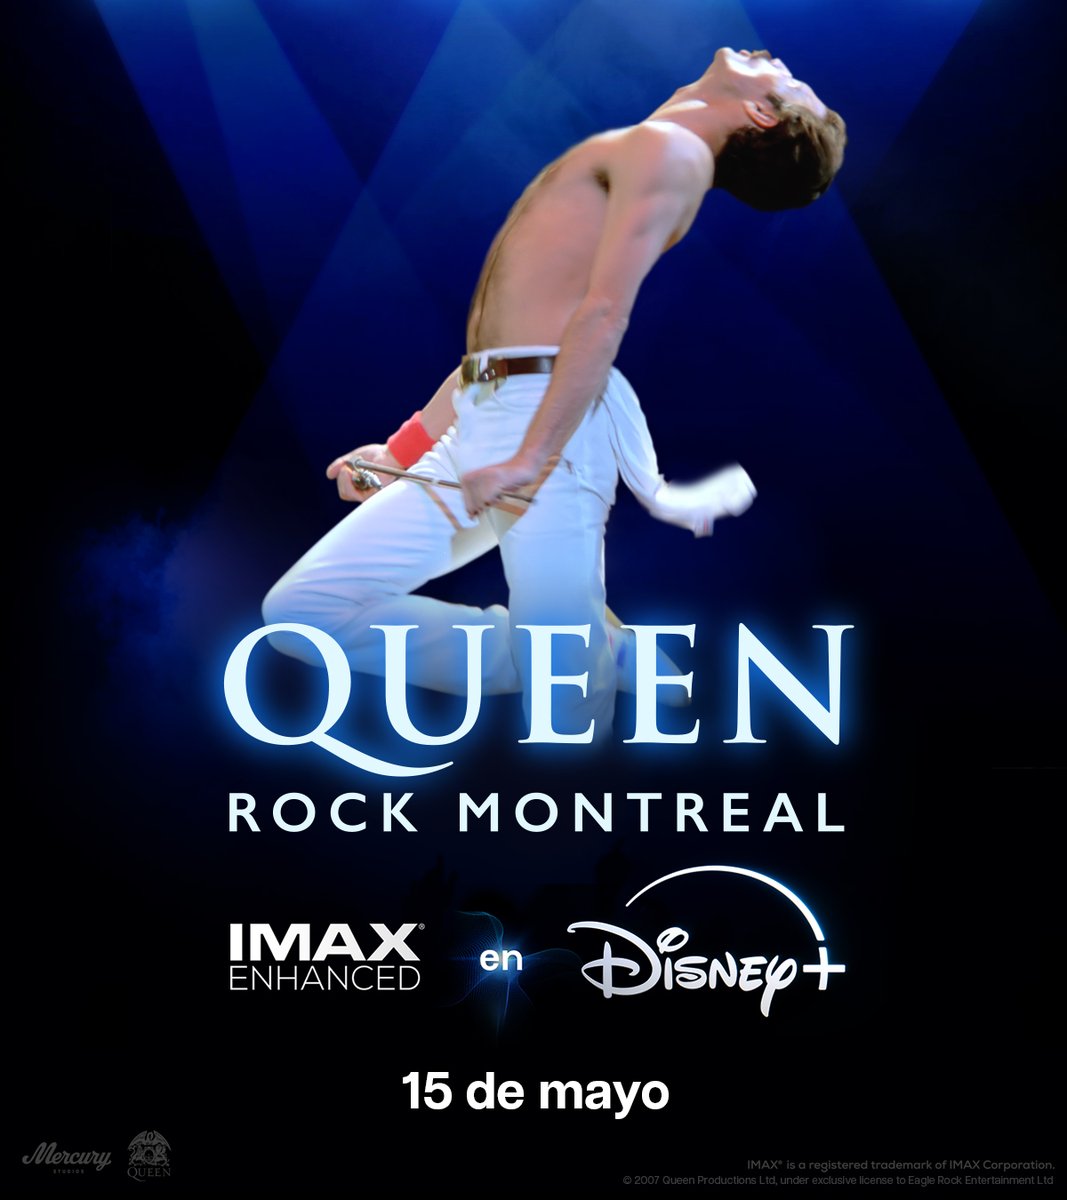 Disfruta del show Queen Rock Montreal, el 15 de mayo en IMAX Enhanced por #DisneyPlus.